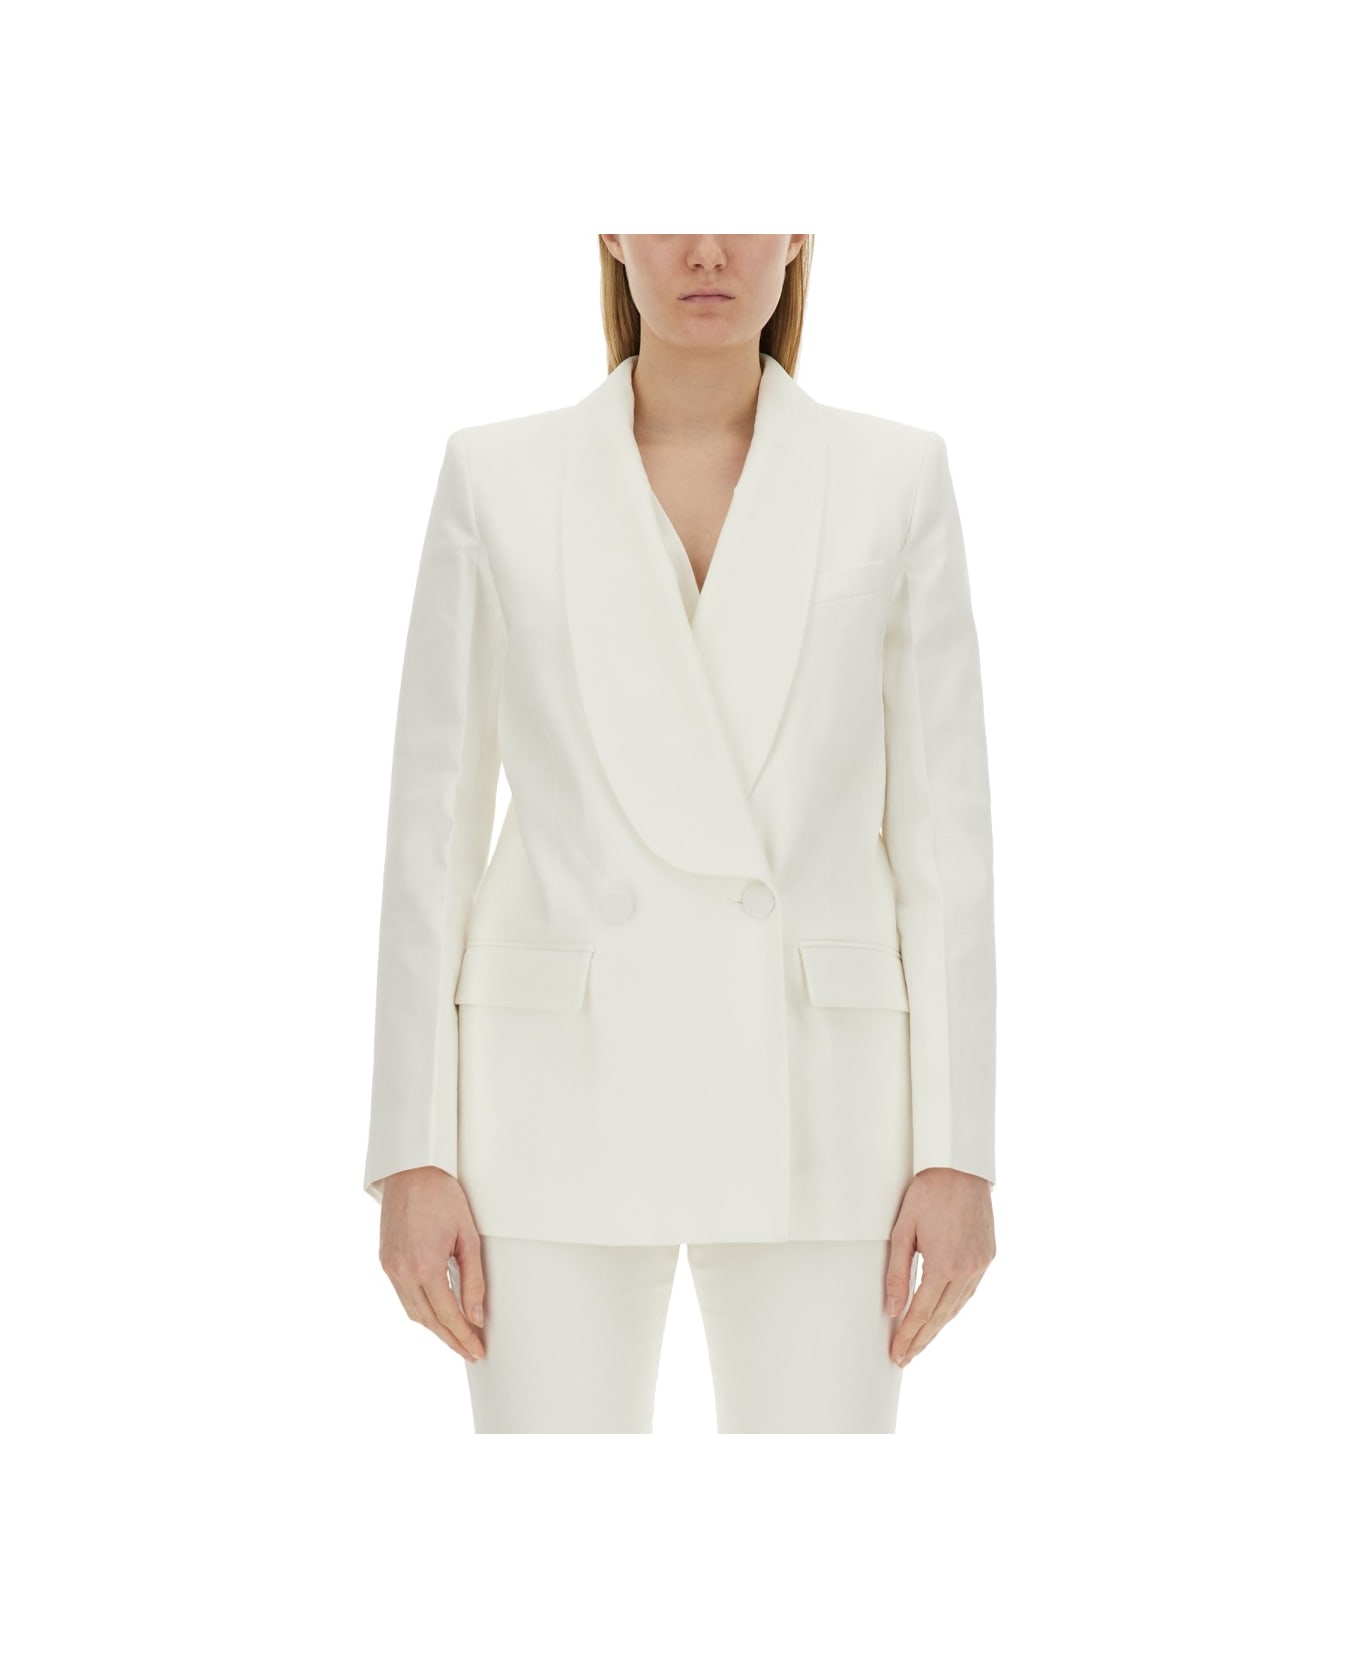 Nina Ricci Double-breasted Jacket - WHITE ジャケット